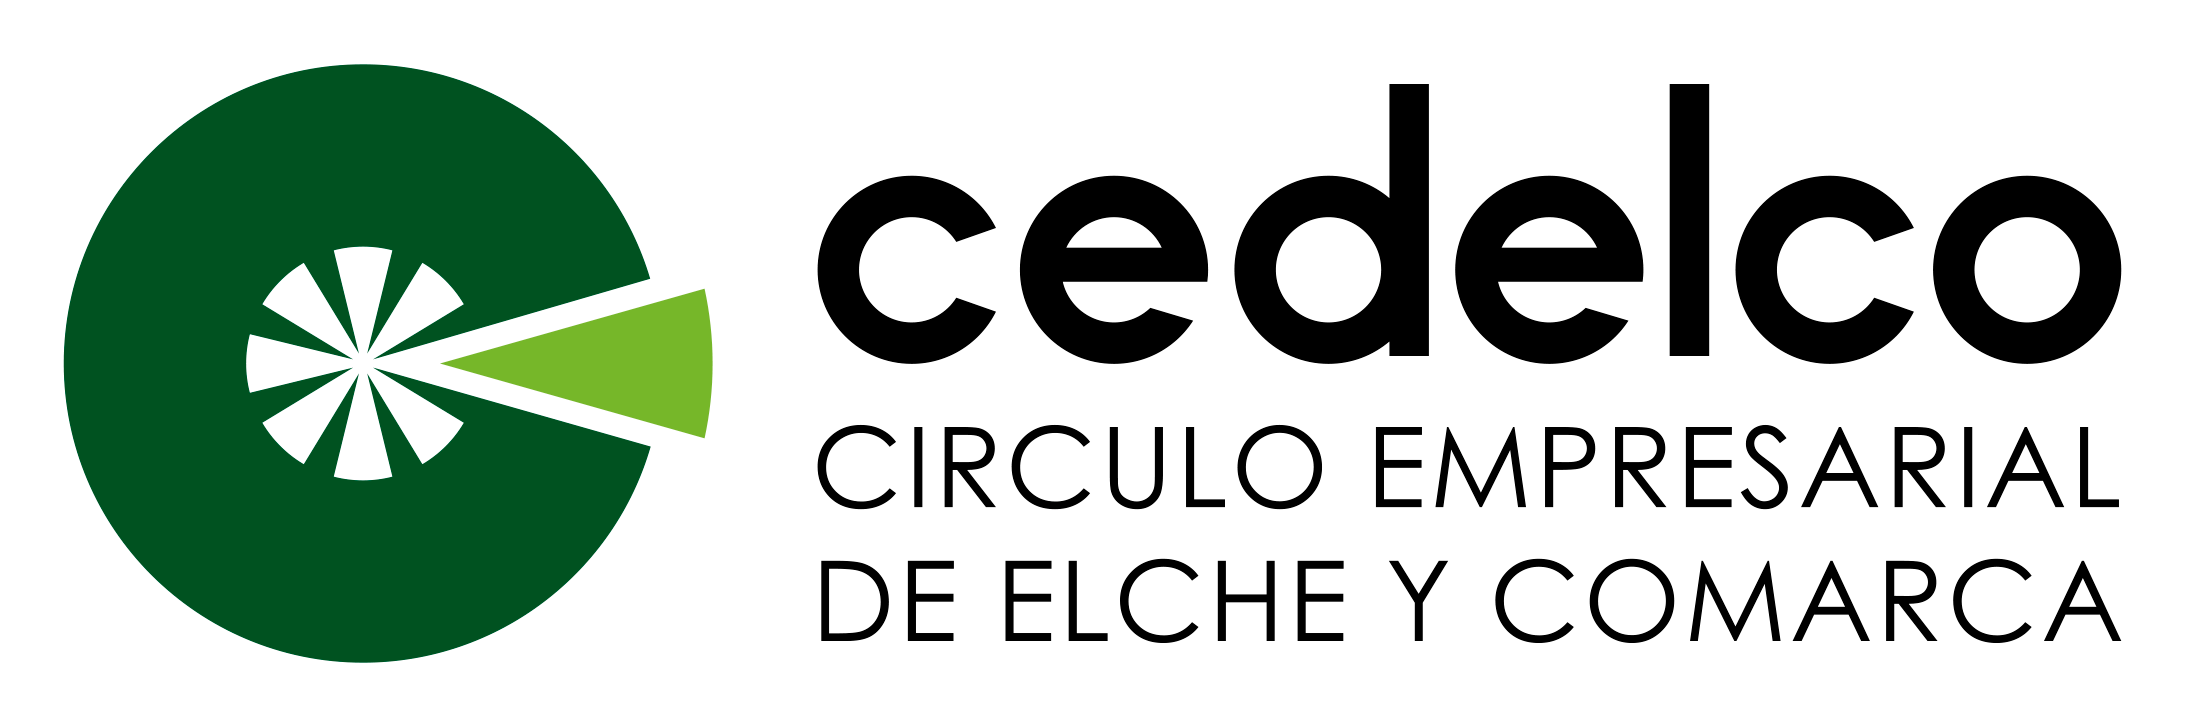 Crculo Empresarial de Elche y Comarca- CEDELCO